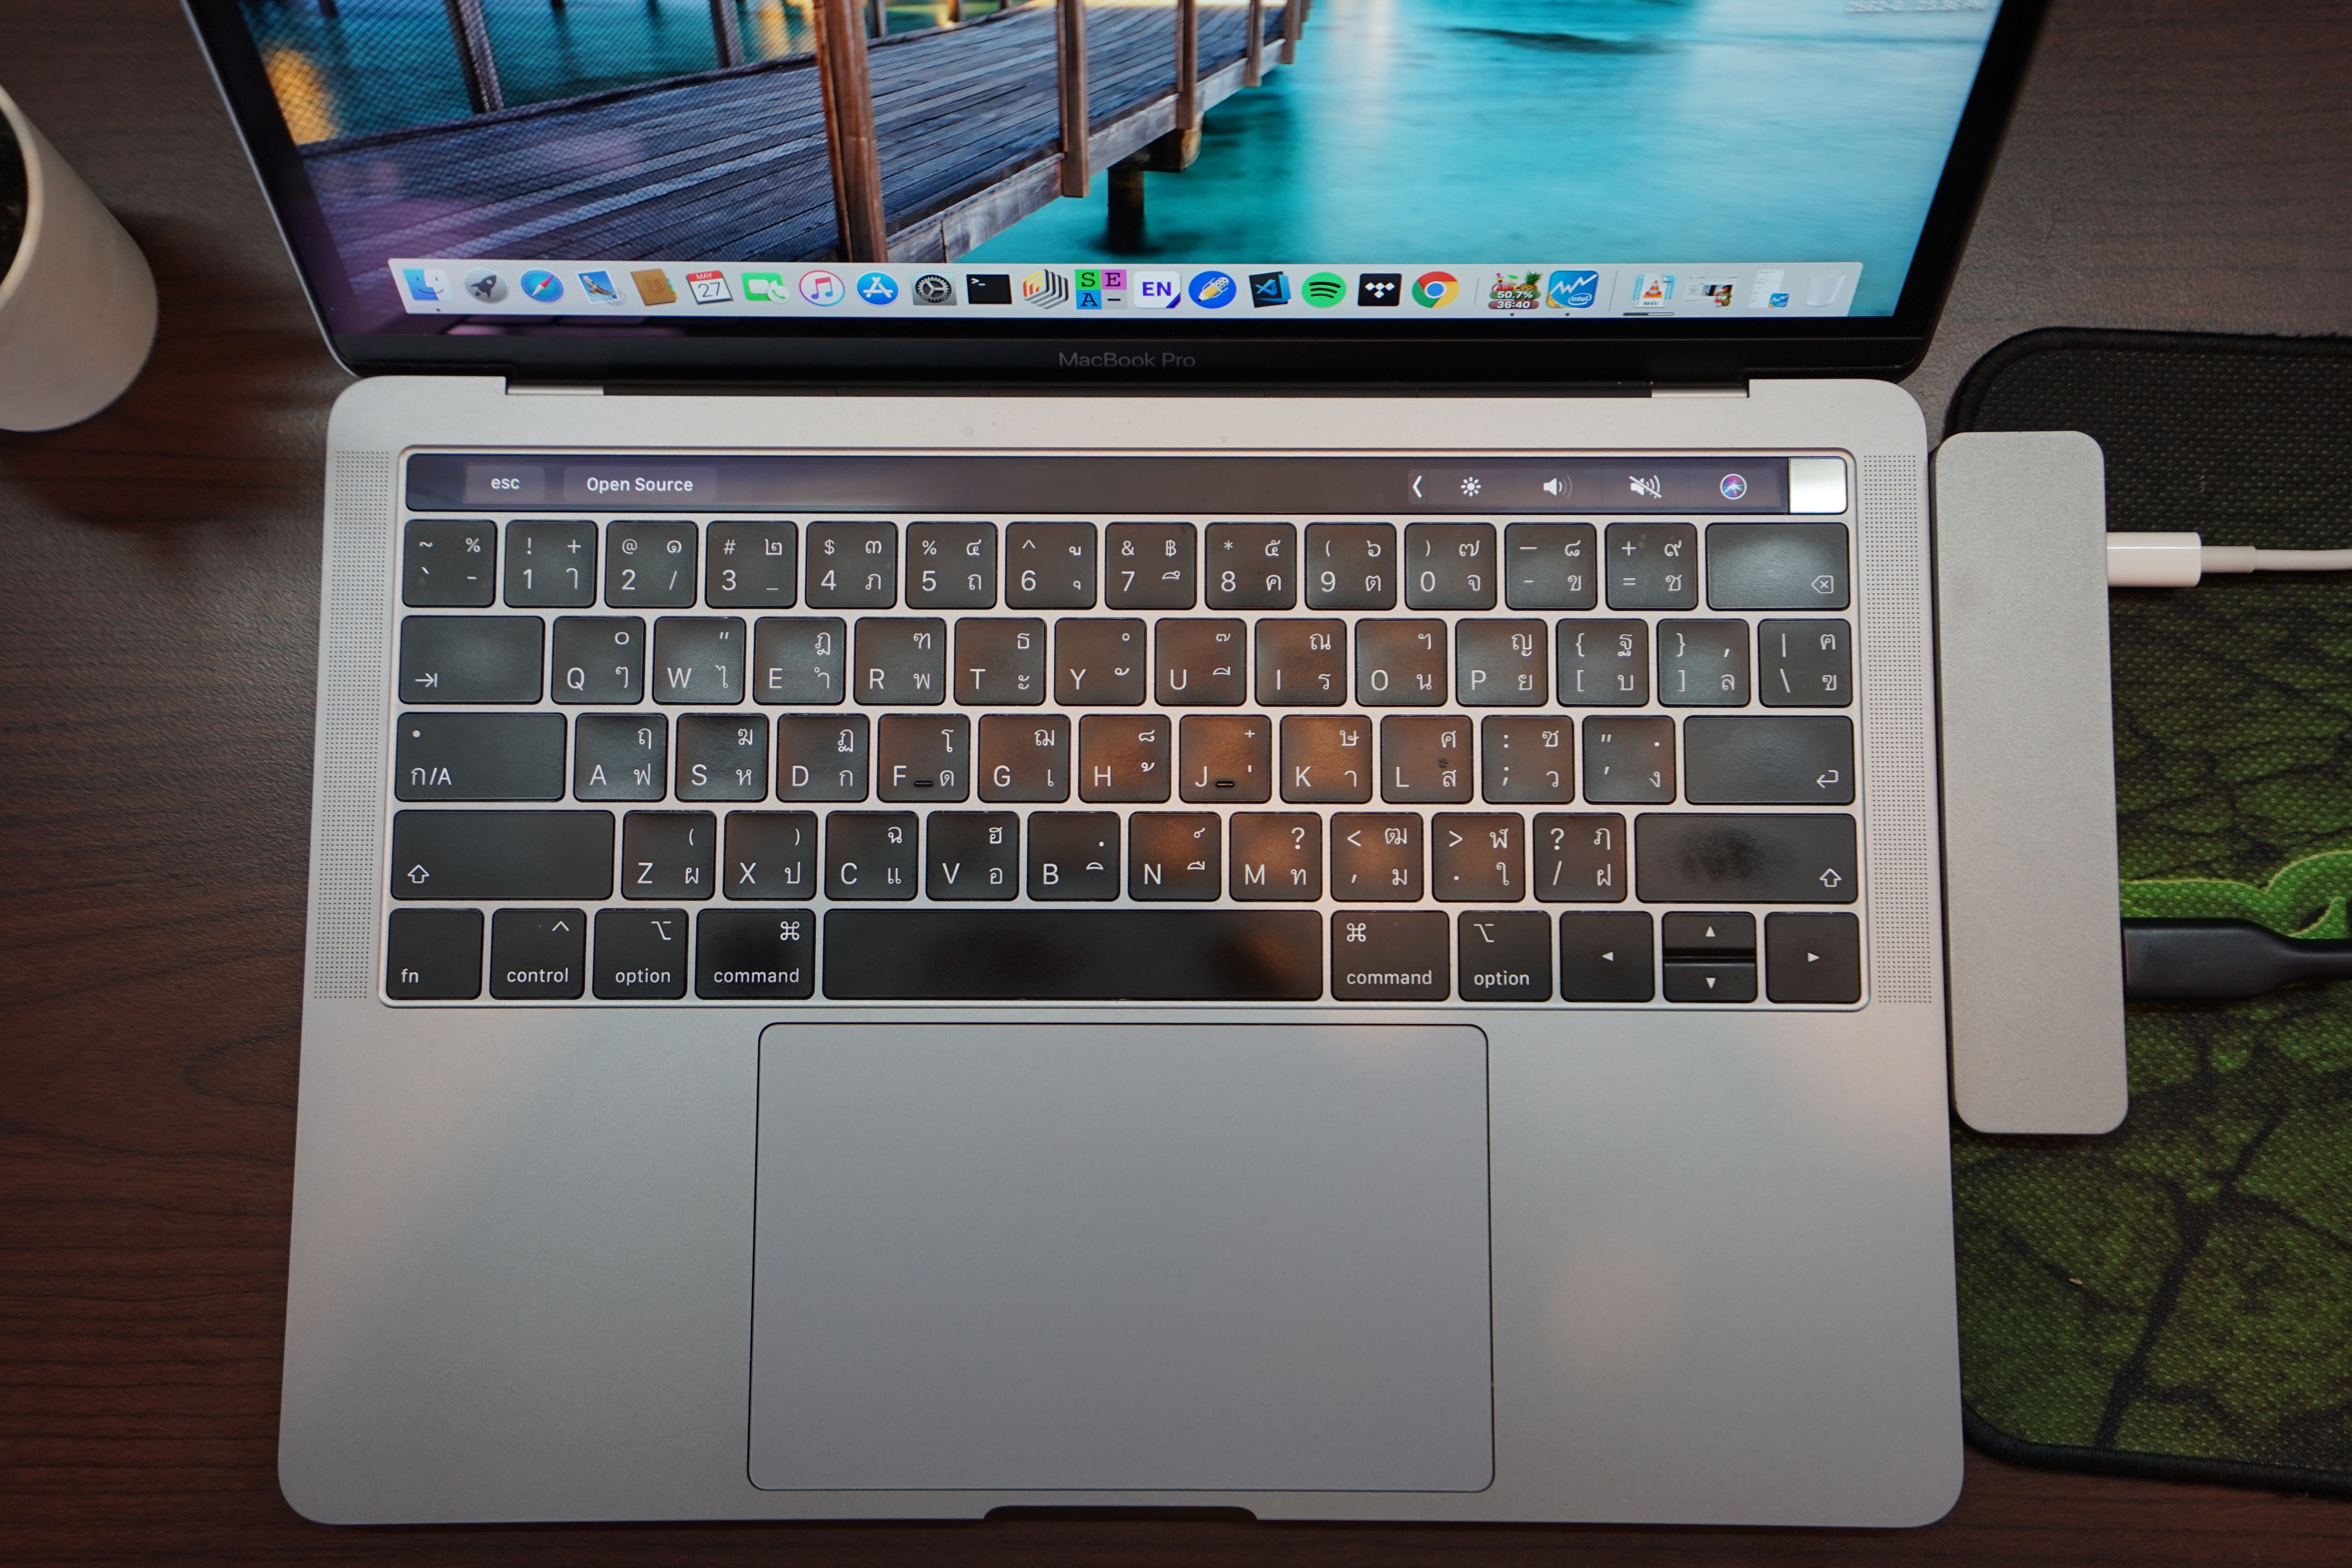 MacBook Pro 13-inch 2018 Top View